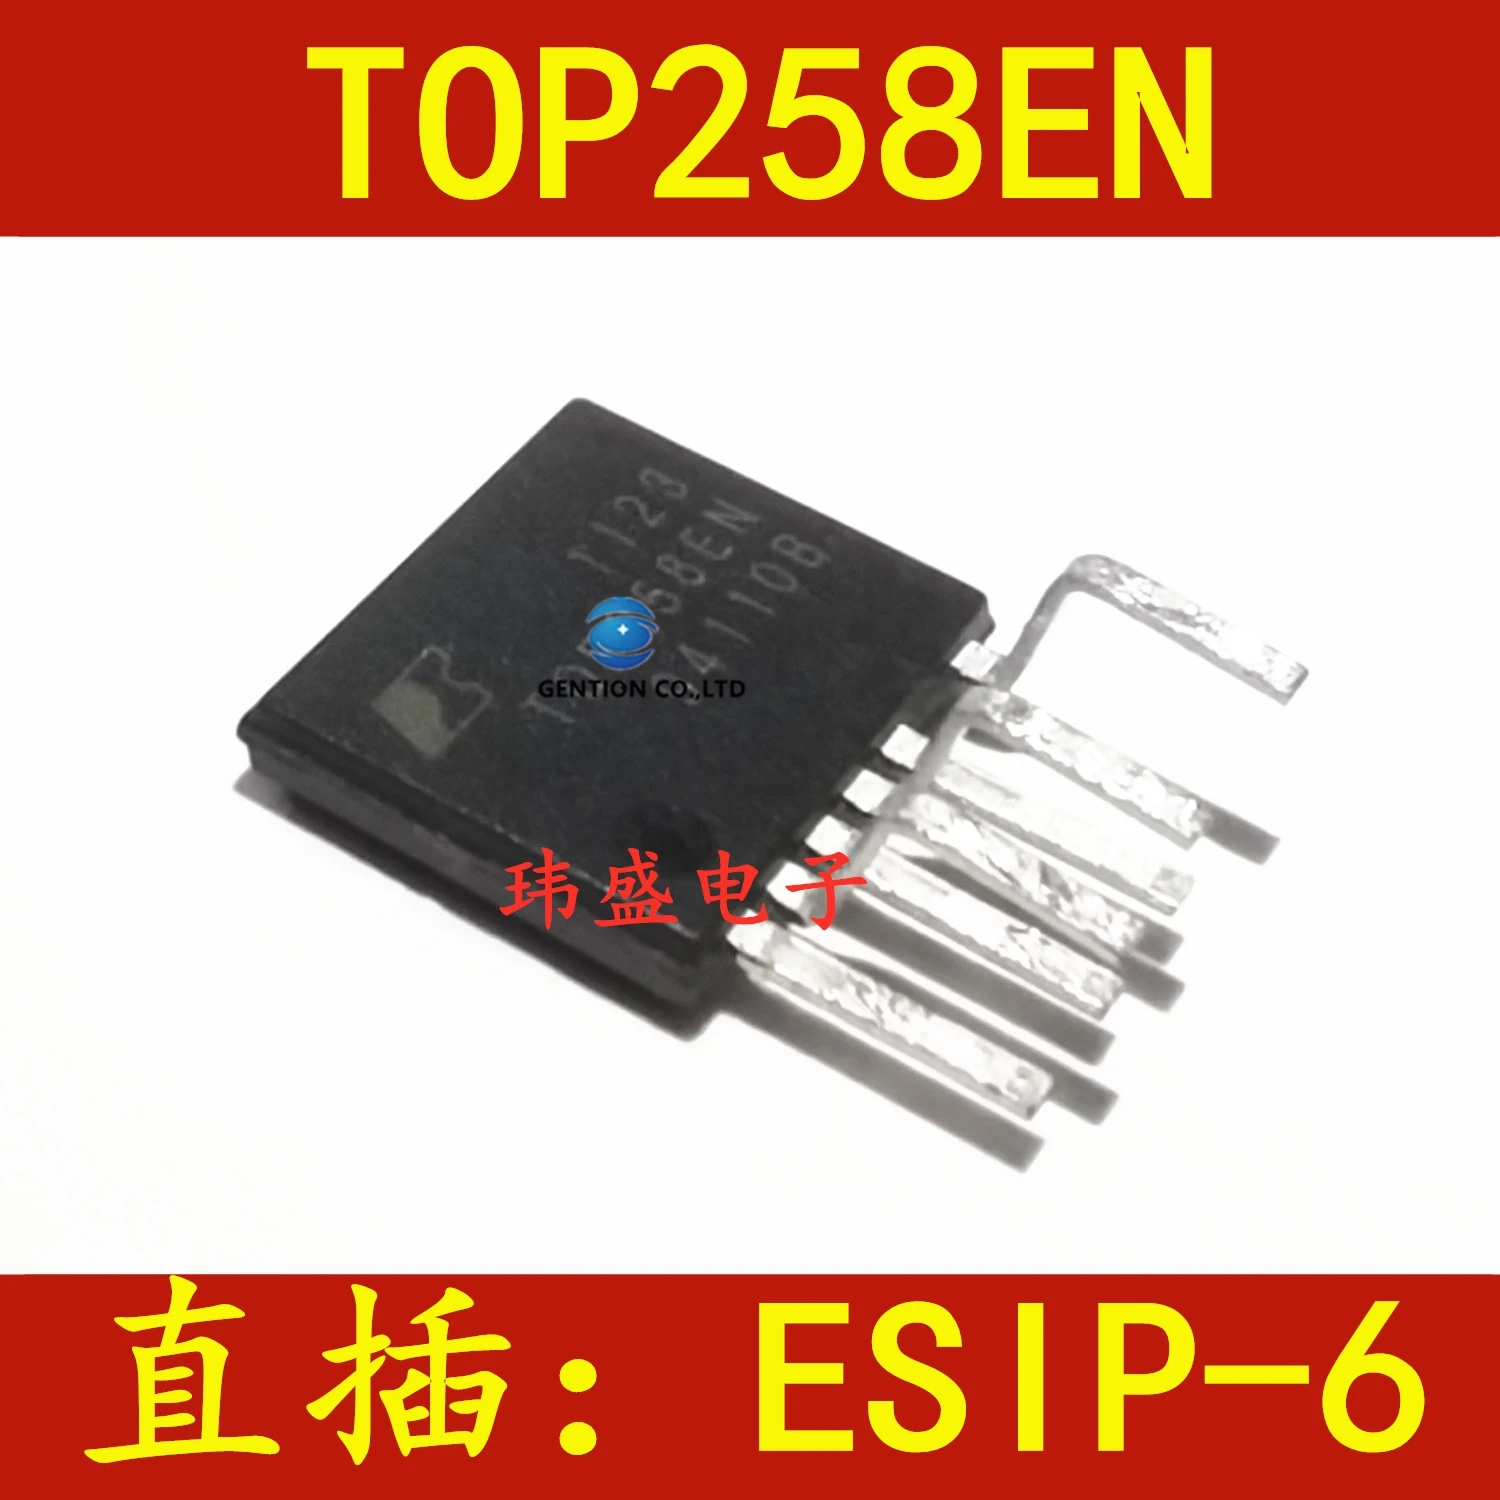 

10 шт. TOP258EN TOP258EG ЖК-дисплей чип управления питанием ESIP-6 в наличии 100% новый и оригинальный